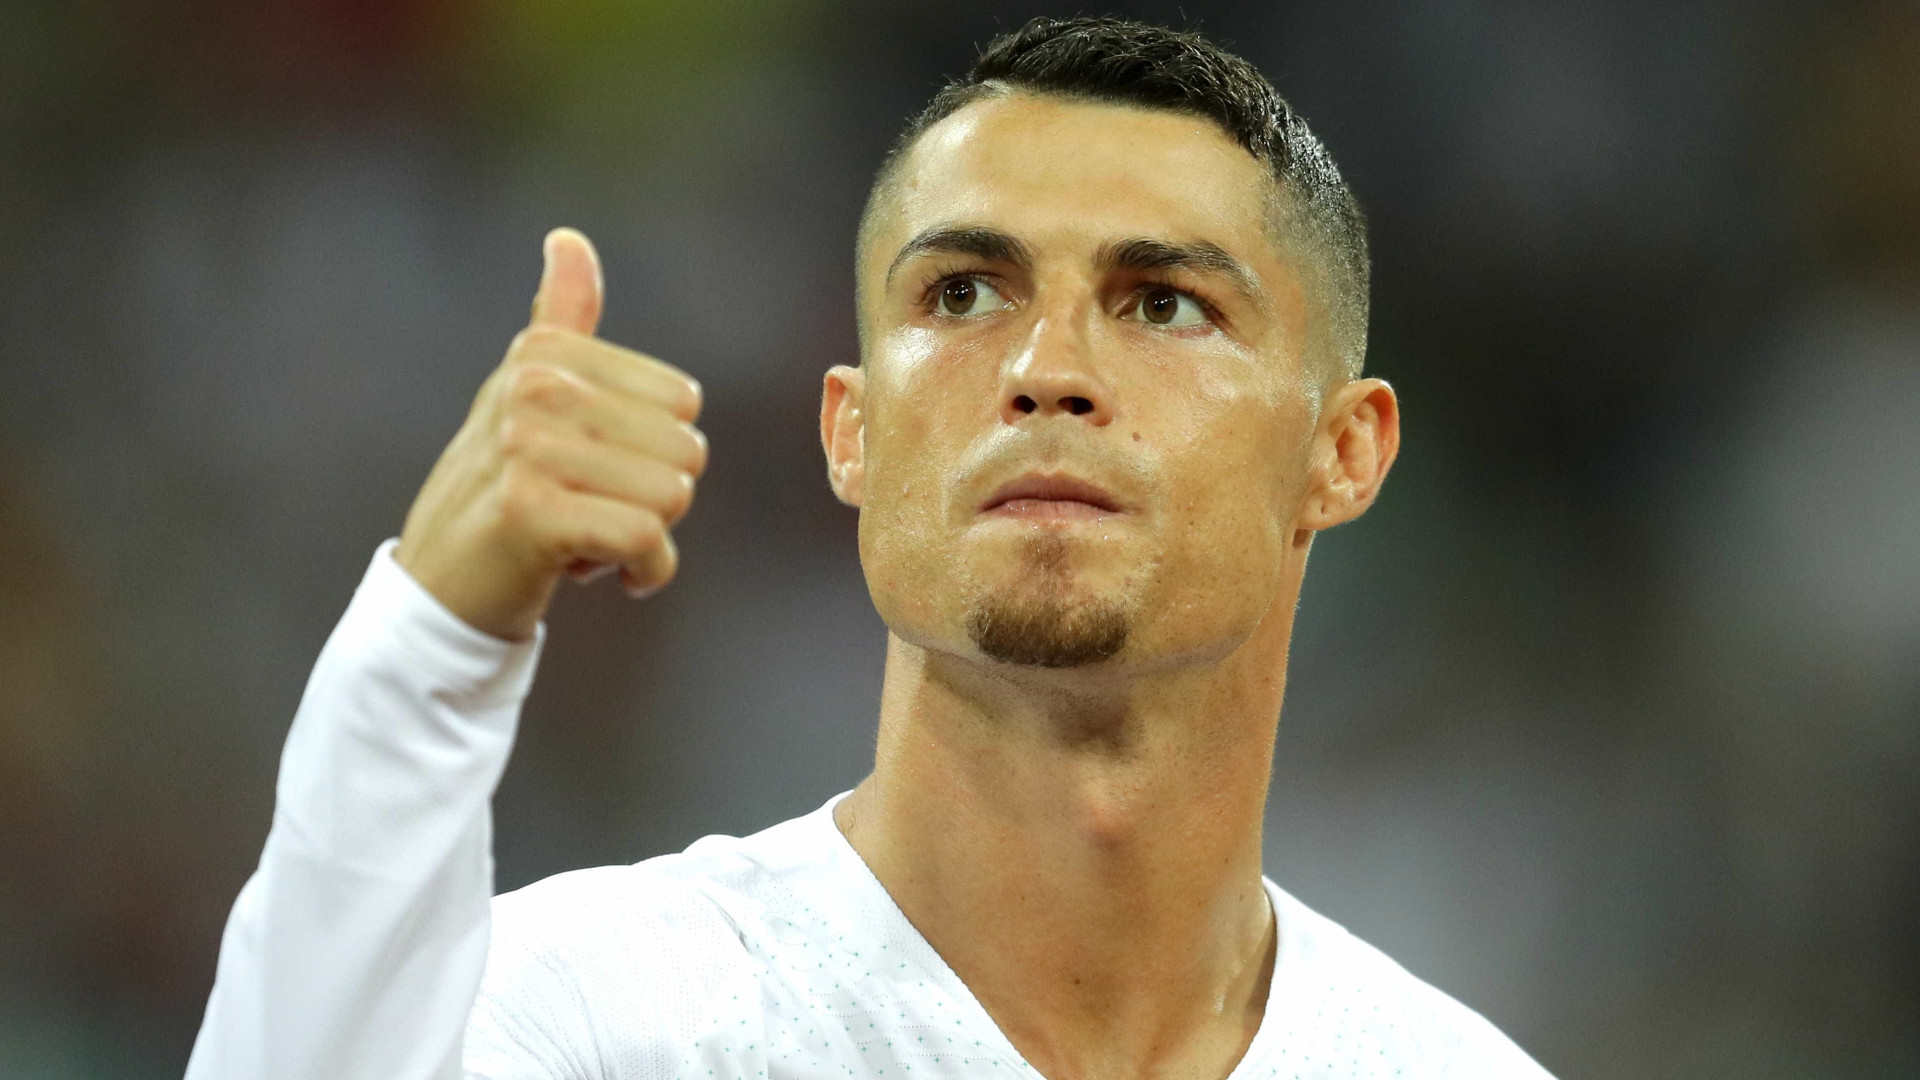 Oficial: Cristiano Ronaldo deixa o Real Madrid e acerta com a Juventus